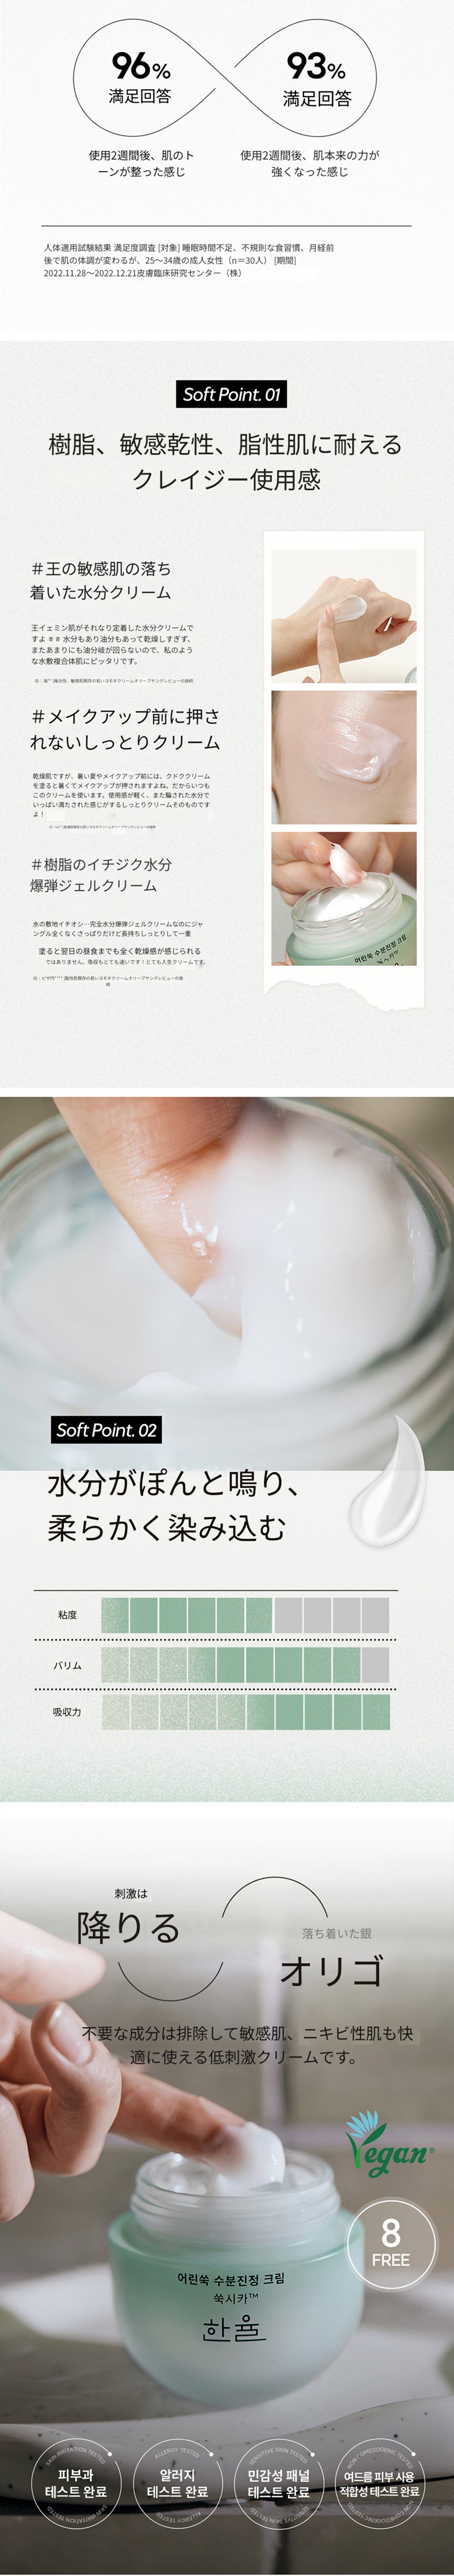 ハニュルピュアアルテミシアウォータリーカーミングクリーム(55ml) - Hanyul Pure Artemisia Watery Calming Cream en4